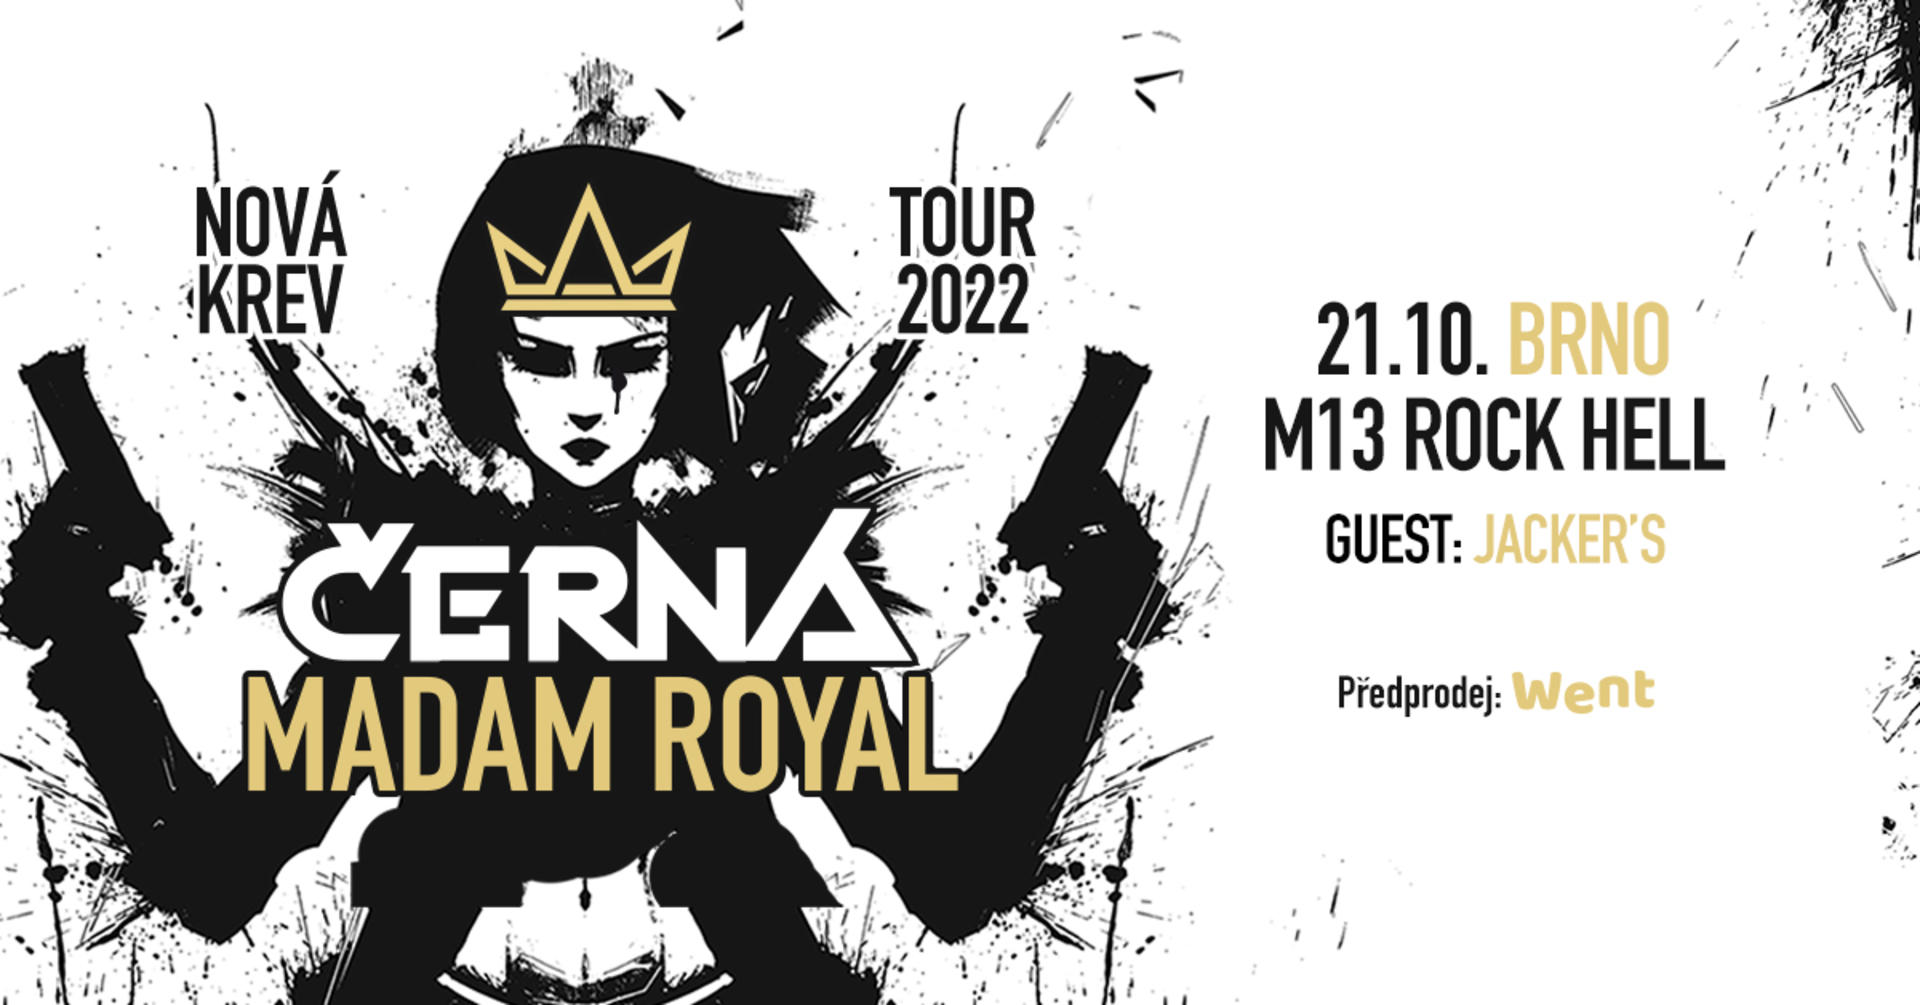 NOVÁ KREV TOUR 22: Černá, Madam Royal, Guest: Jacker’s